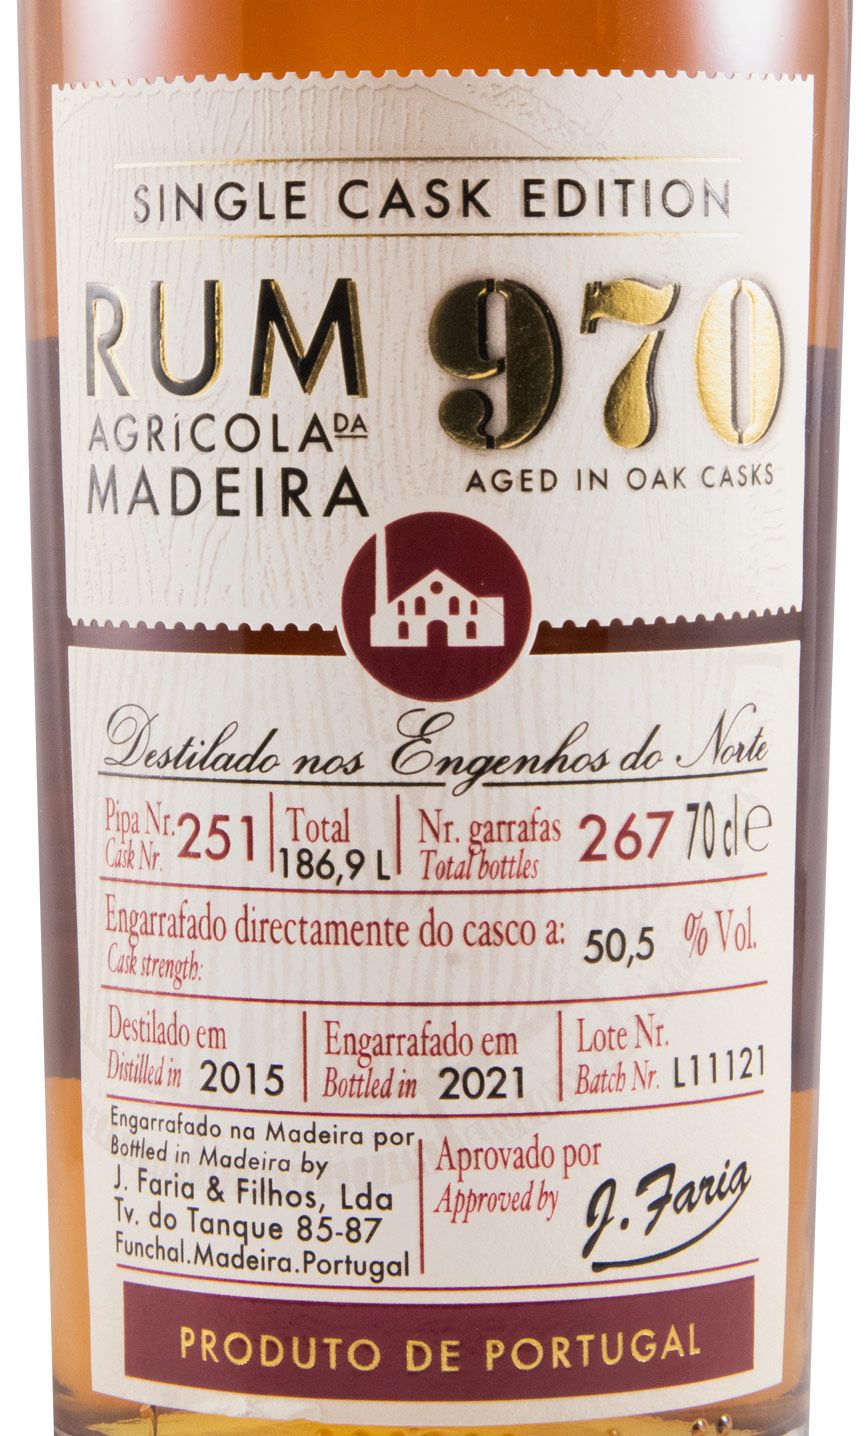 2015 Rum Agrícola da Madeira 970 Single Cask Edition Pipa 251